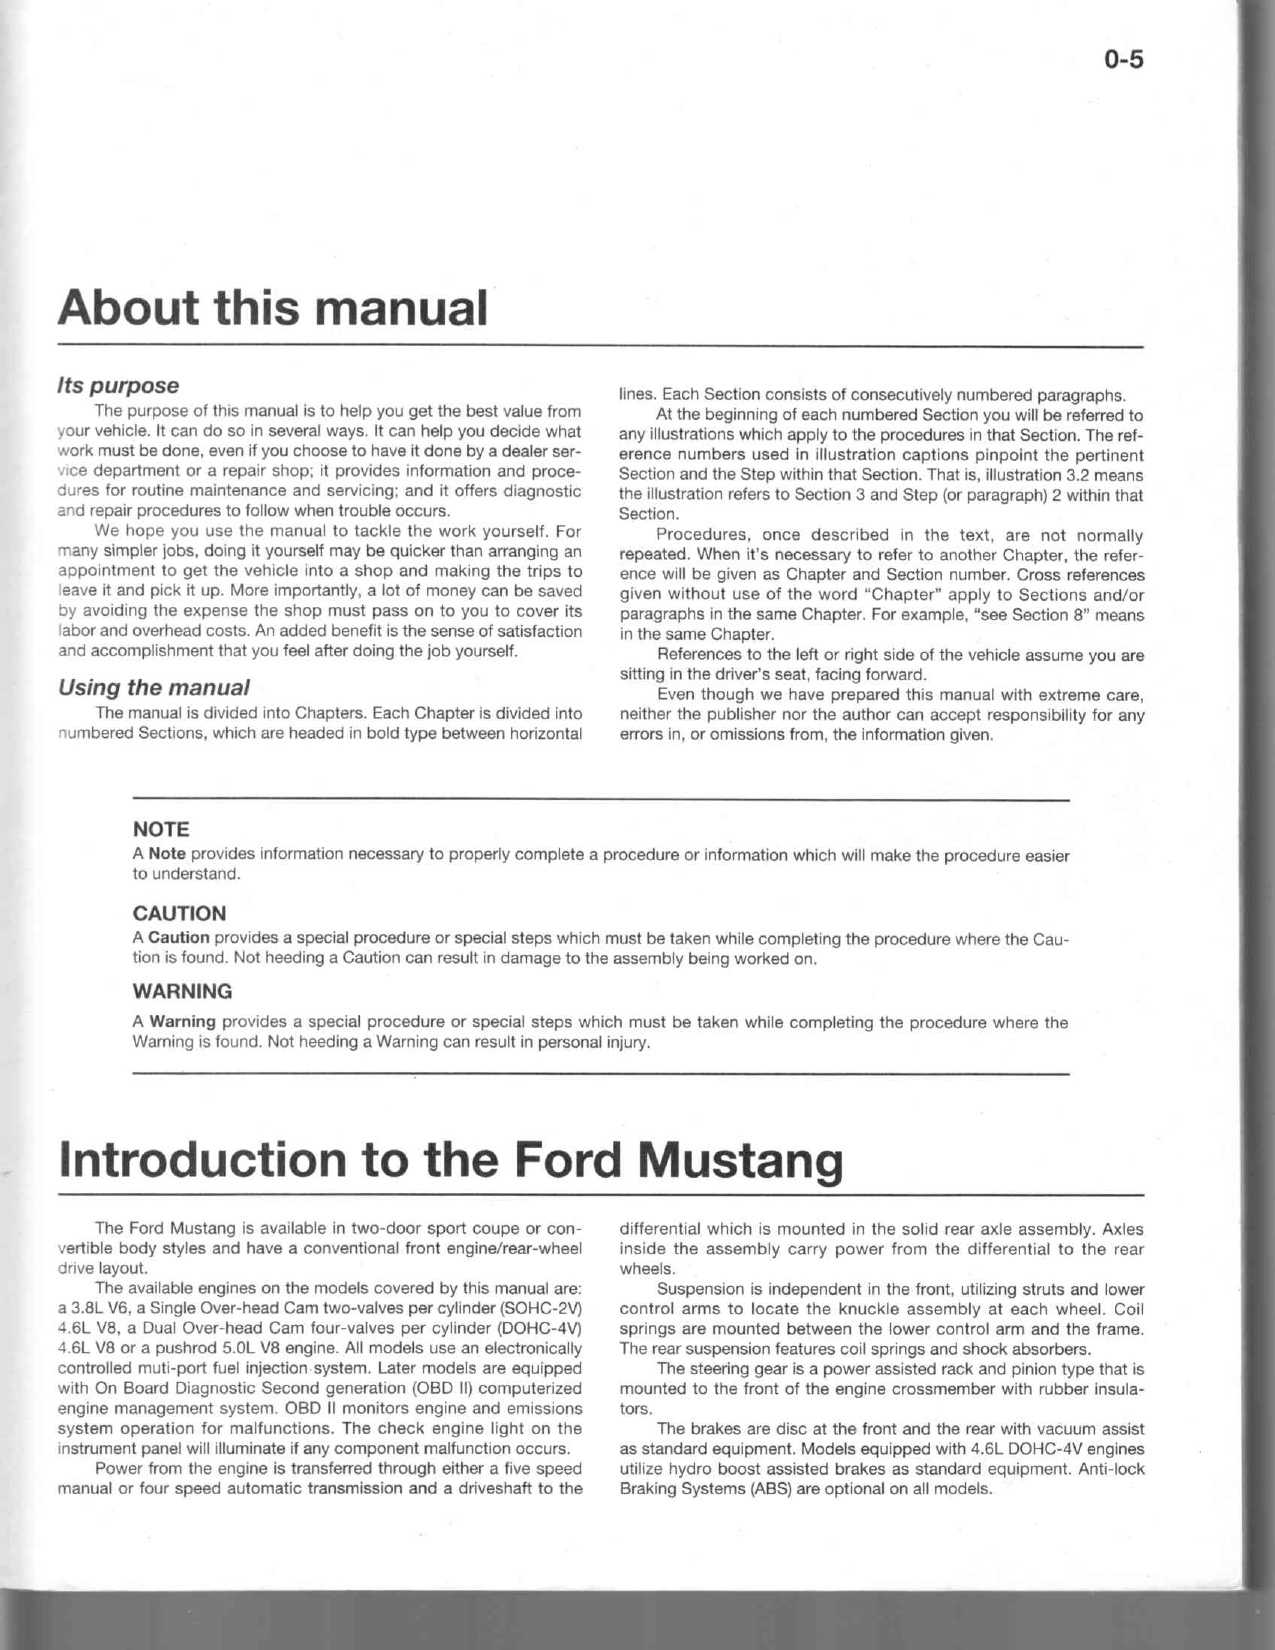 1994-1999 Ford Mustang repair manual Preview image 3